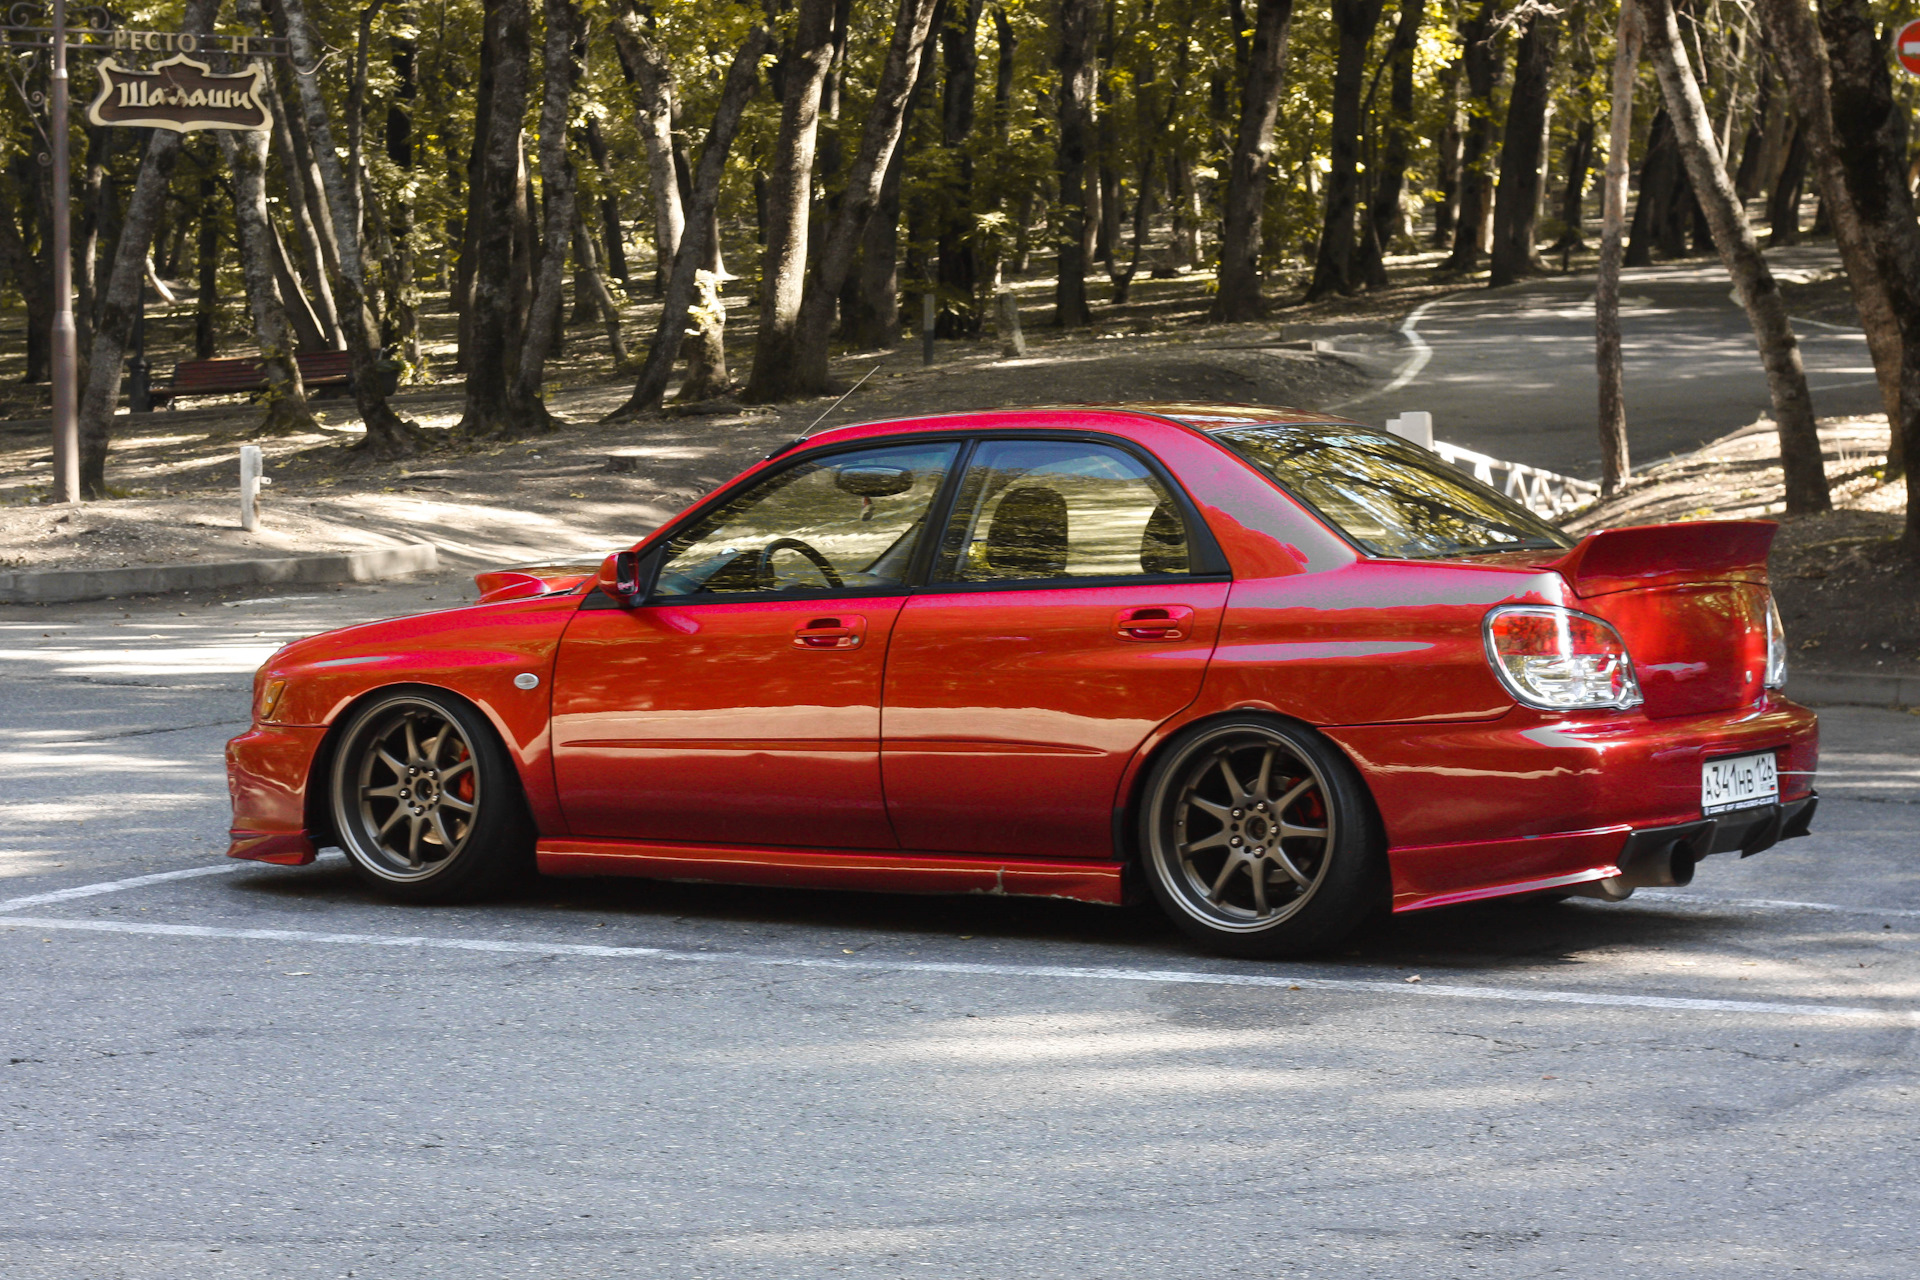 Красные стоки. Subaru Impreza WRX 2002 красная. Subaru WRX STI 2002 красный. Субару Импреза дактейл. Красная Subaru Impreza WRX STI 2002.